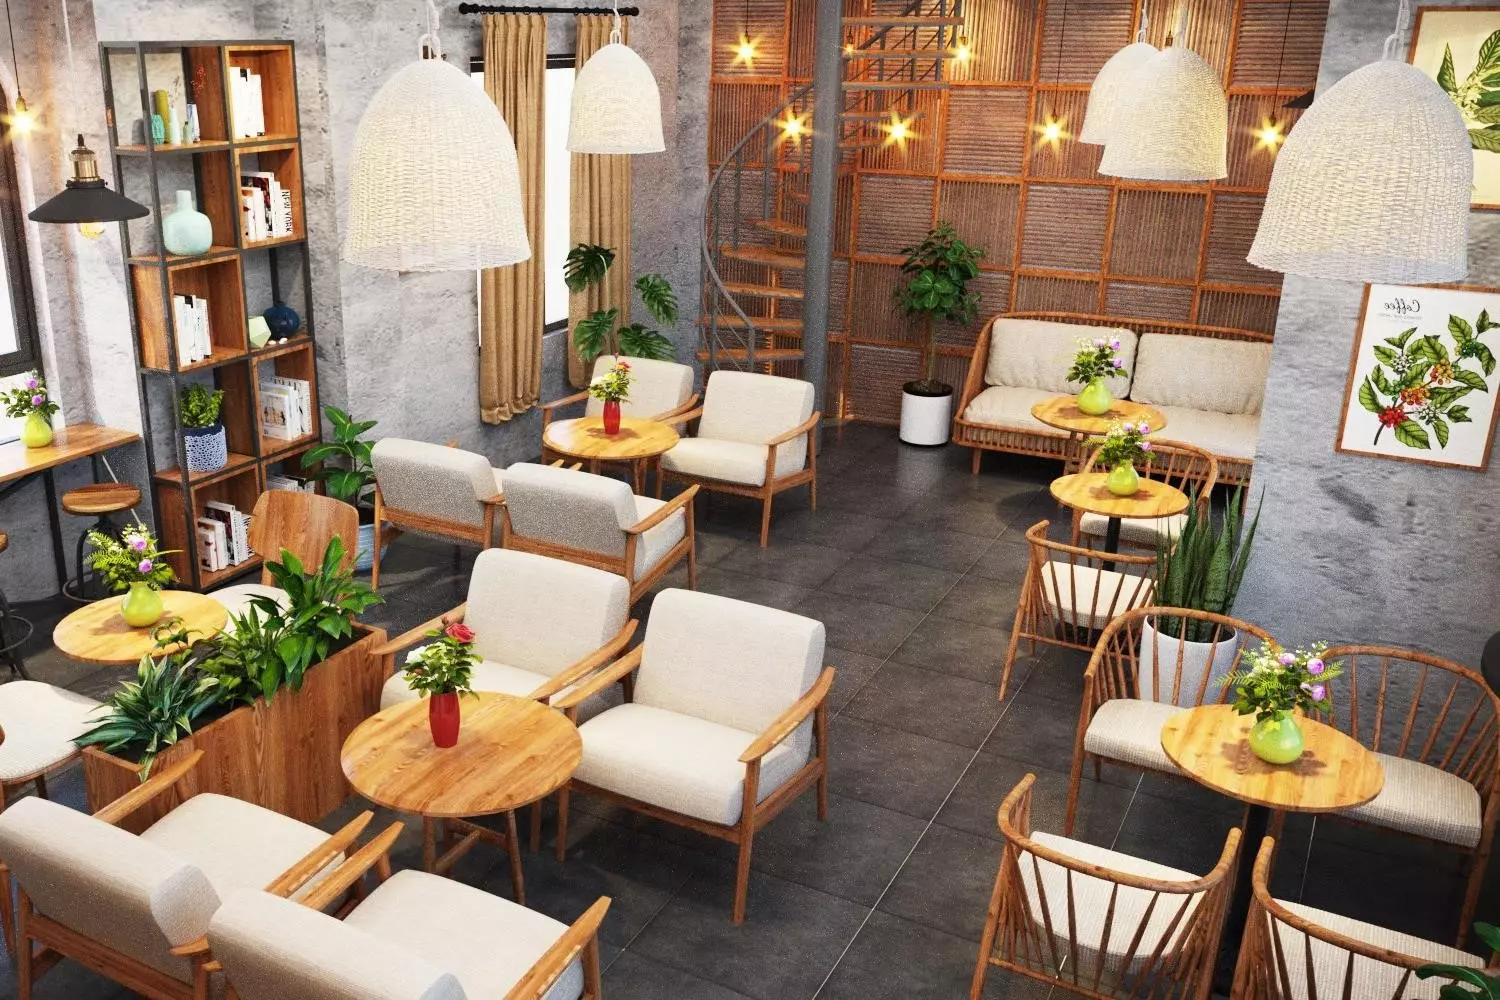 Ann Coffee & Bingsu là một quán cà phê nổi tiếng với đồ uống và món bingsu ngon lành, tạo nên không gian thư giãn và ấm cúng cho khách hàng.